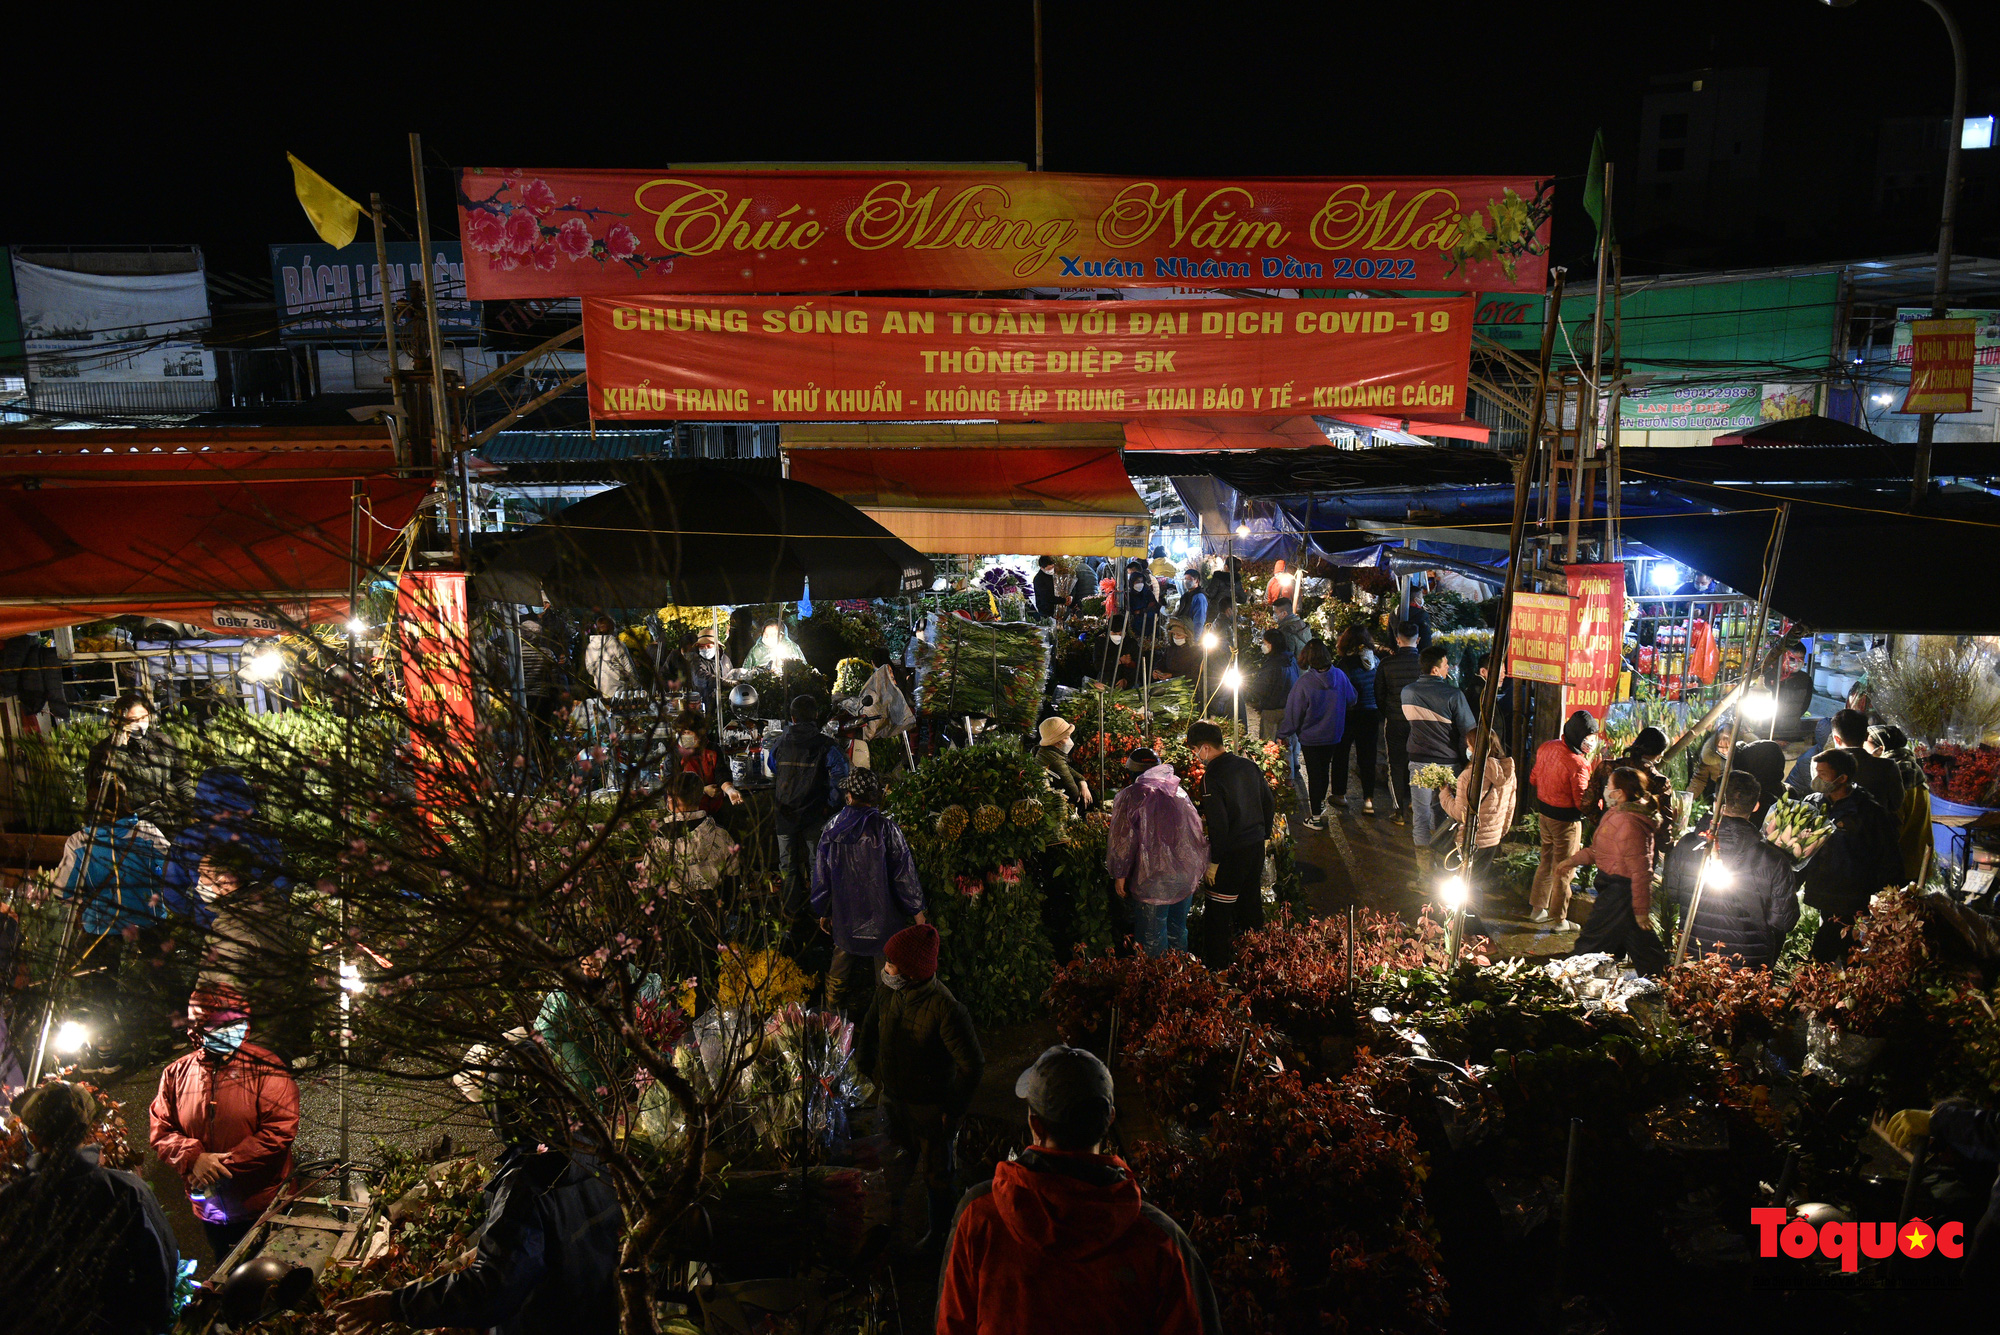 Chợ hoa đêm lớn nhất Hà Nội rộn ràng ngày cận Tết - Ảnh 2.